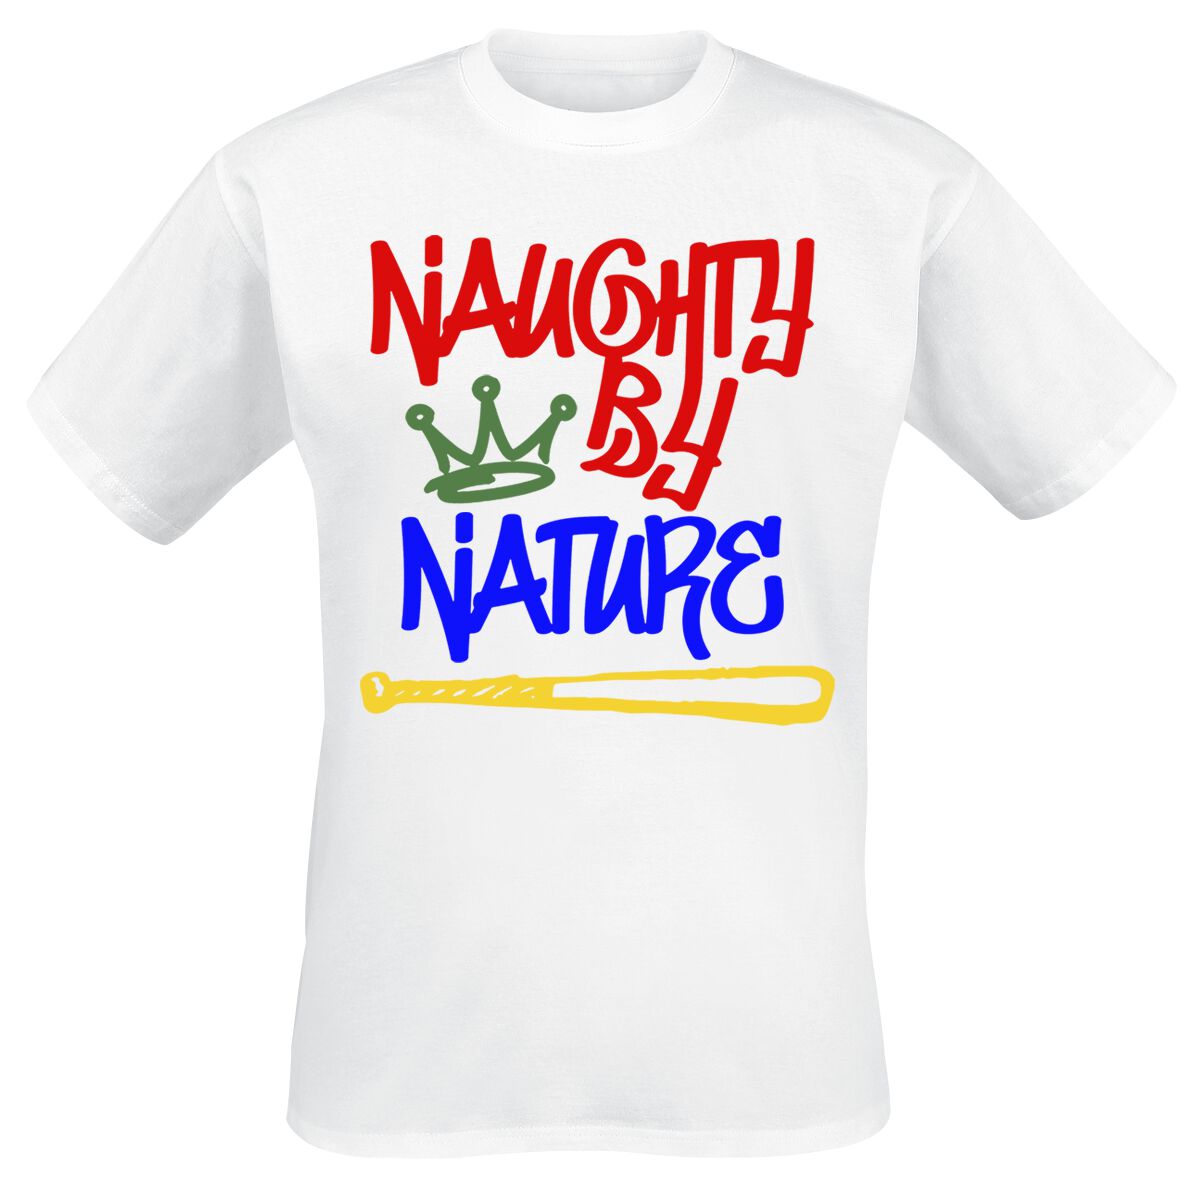 Naughty by Nature T-Shirt - Graffiti Logo - S bis 3XL - für Männer - Größe XL - weiß  - Lizenziertes Merchandise!